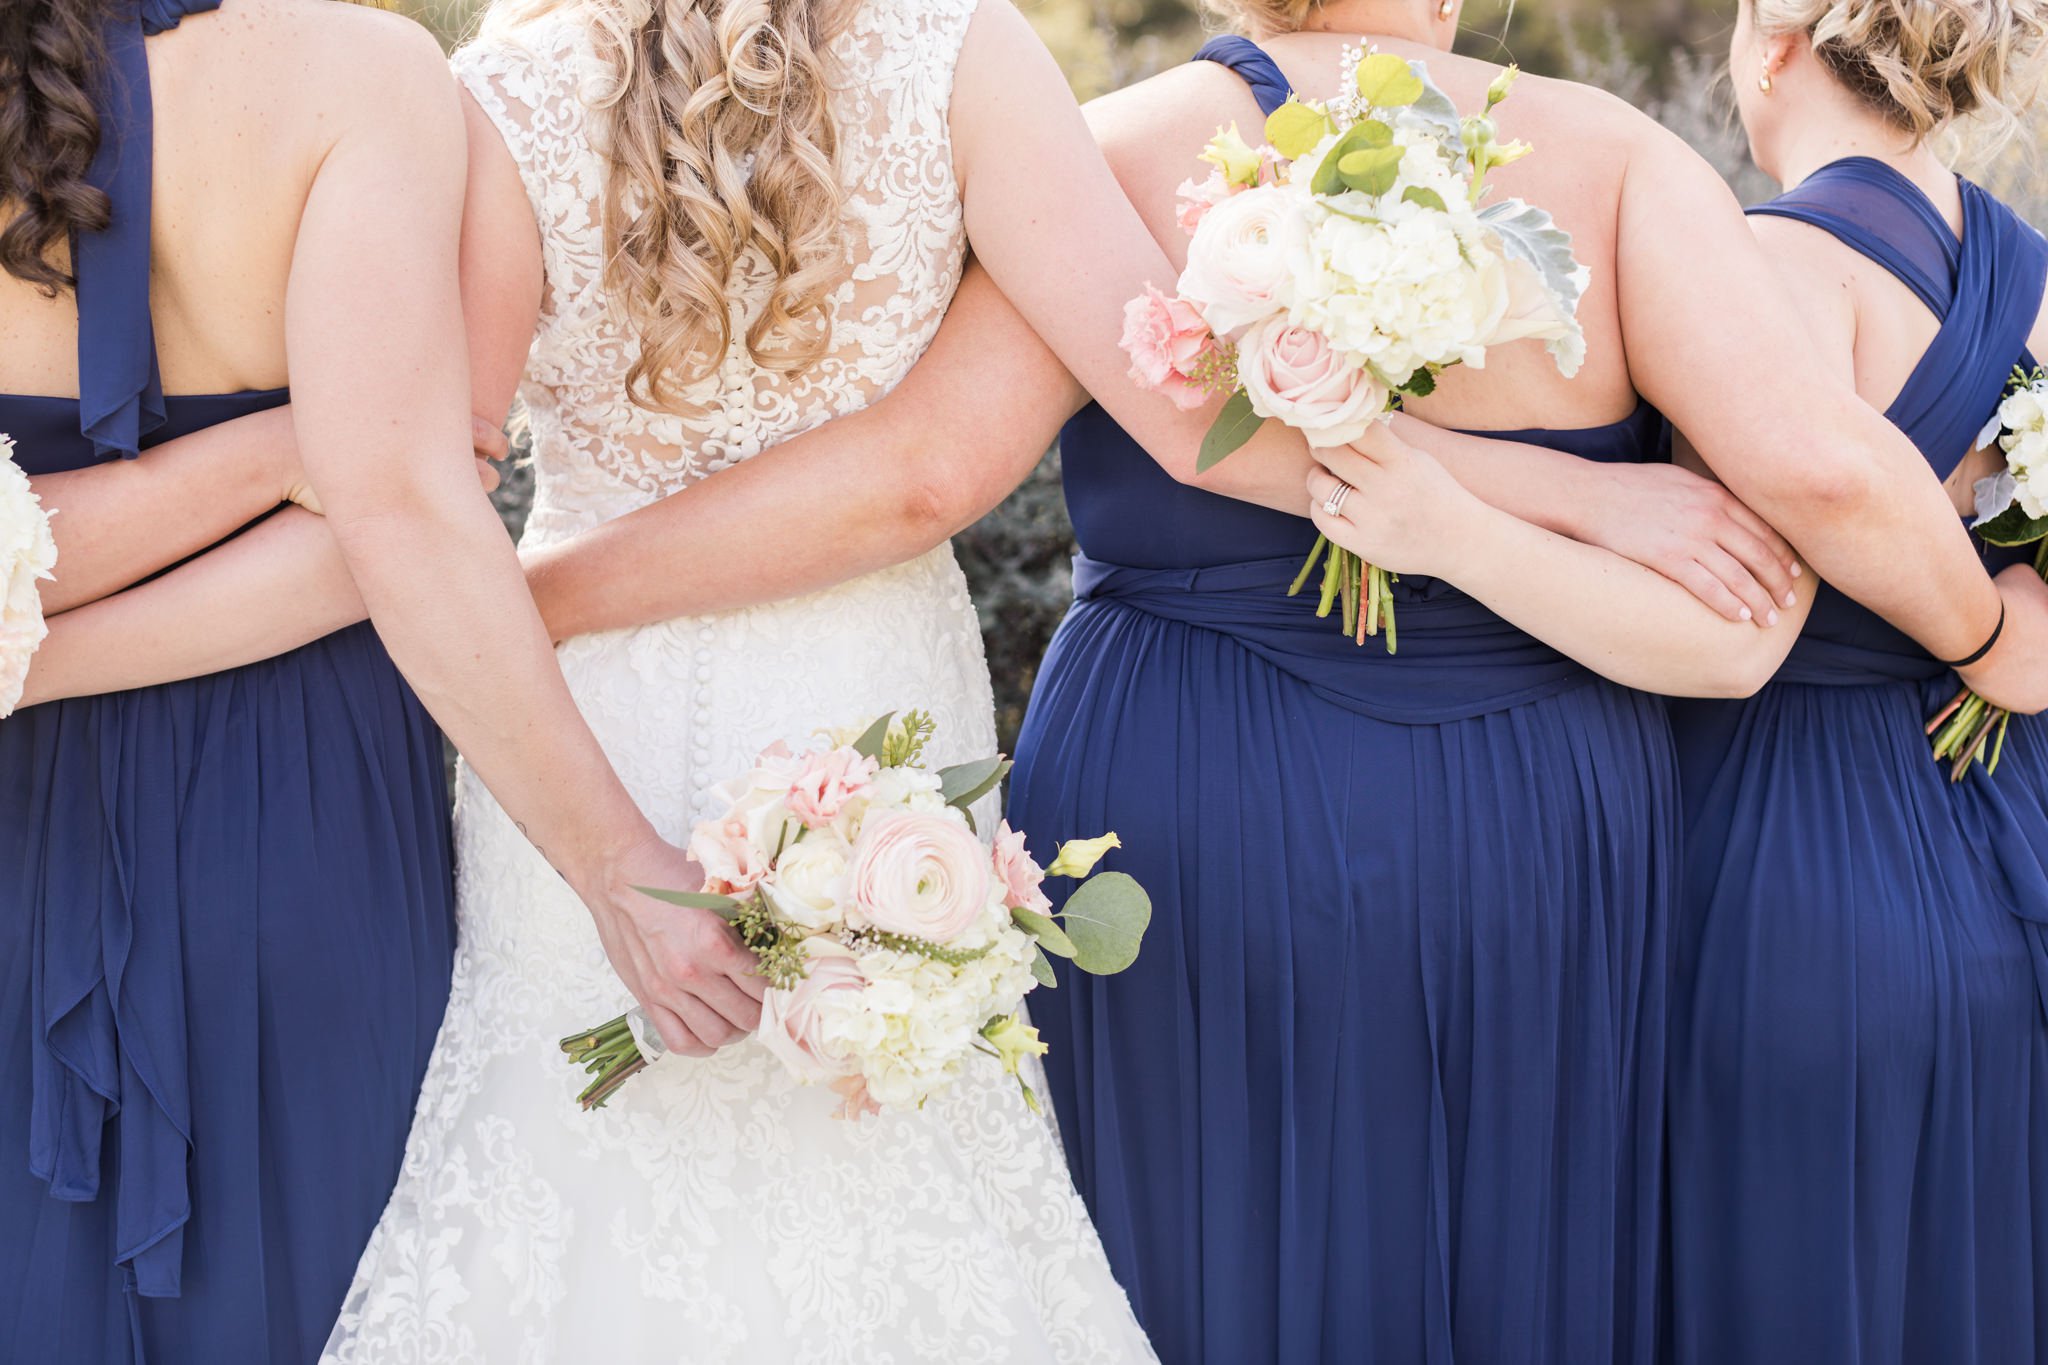 A Navy and Blush Wedding at Kendall Plantation in Boerne, TX by Dawn Elizabeth Studios, San Antonio Wedding Photographer